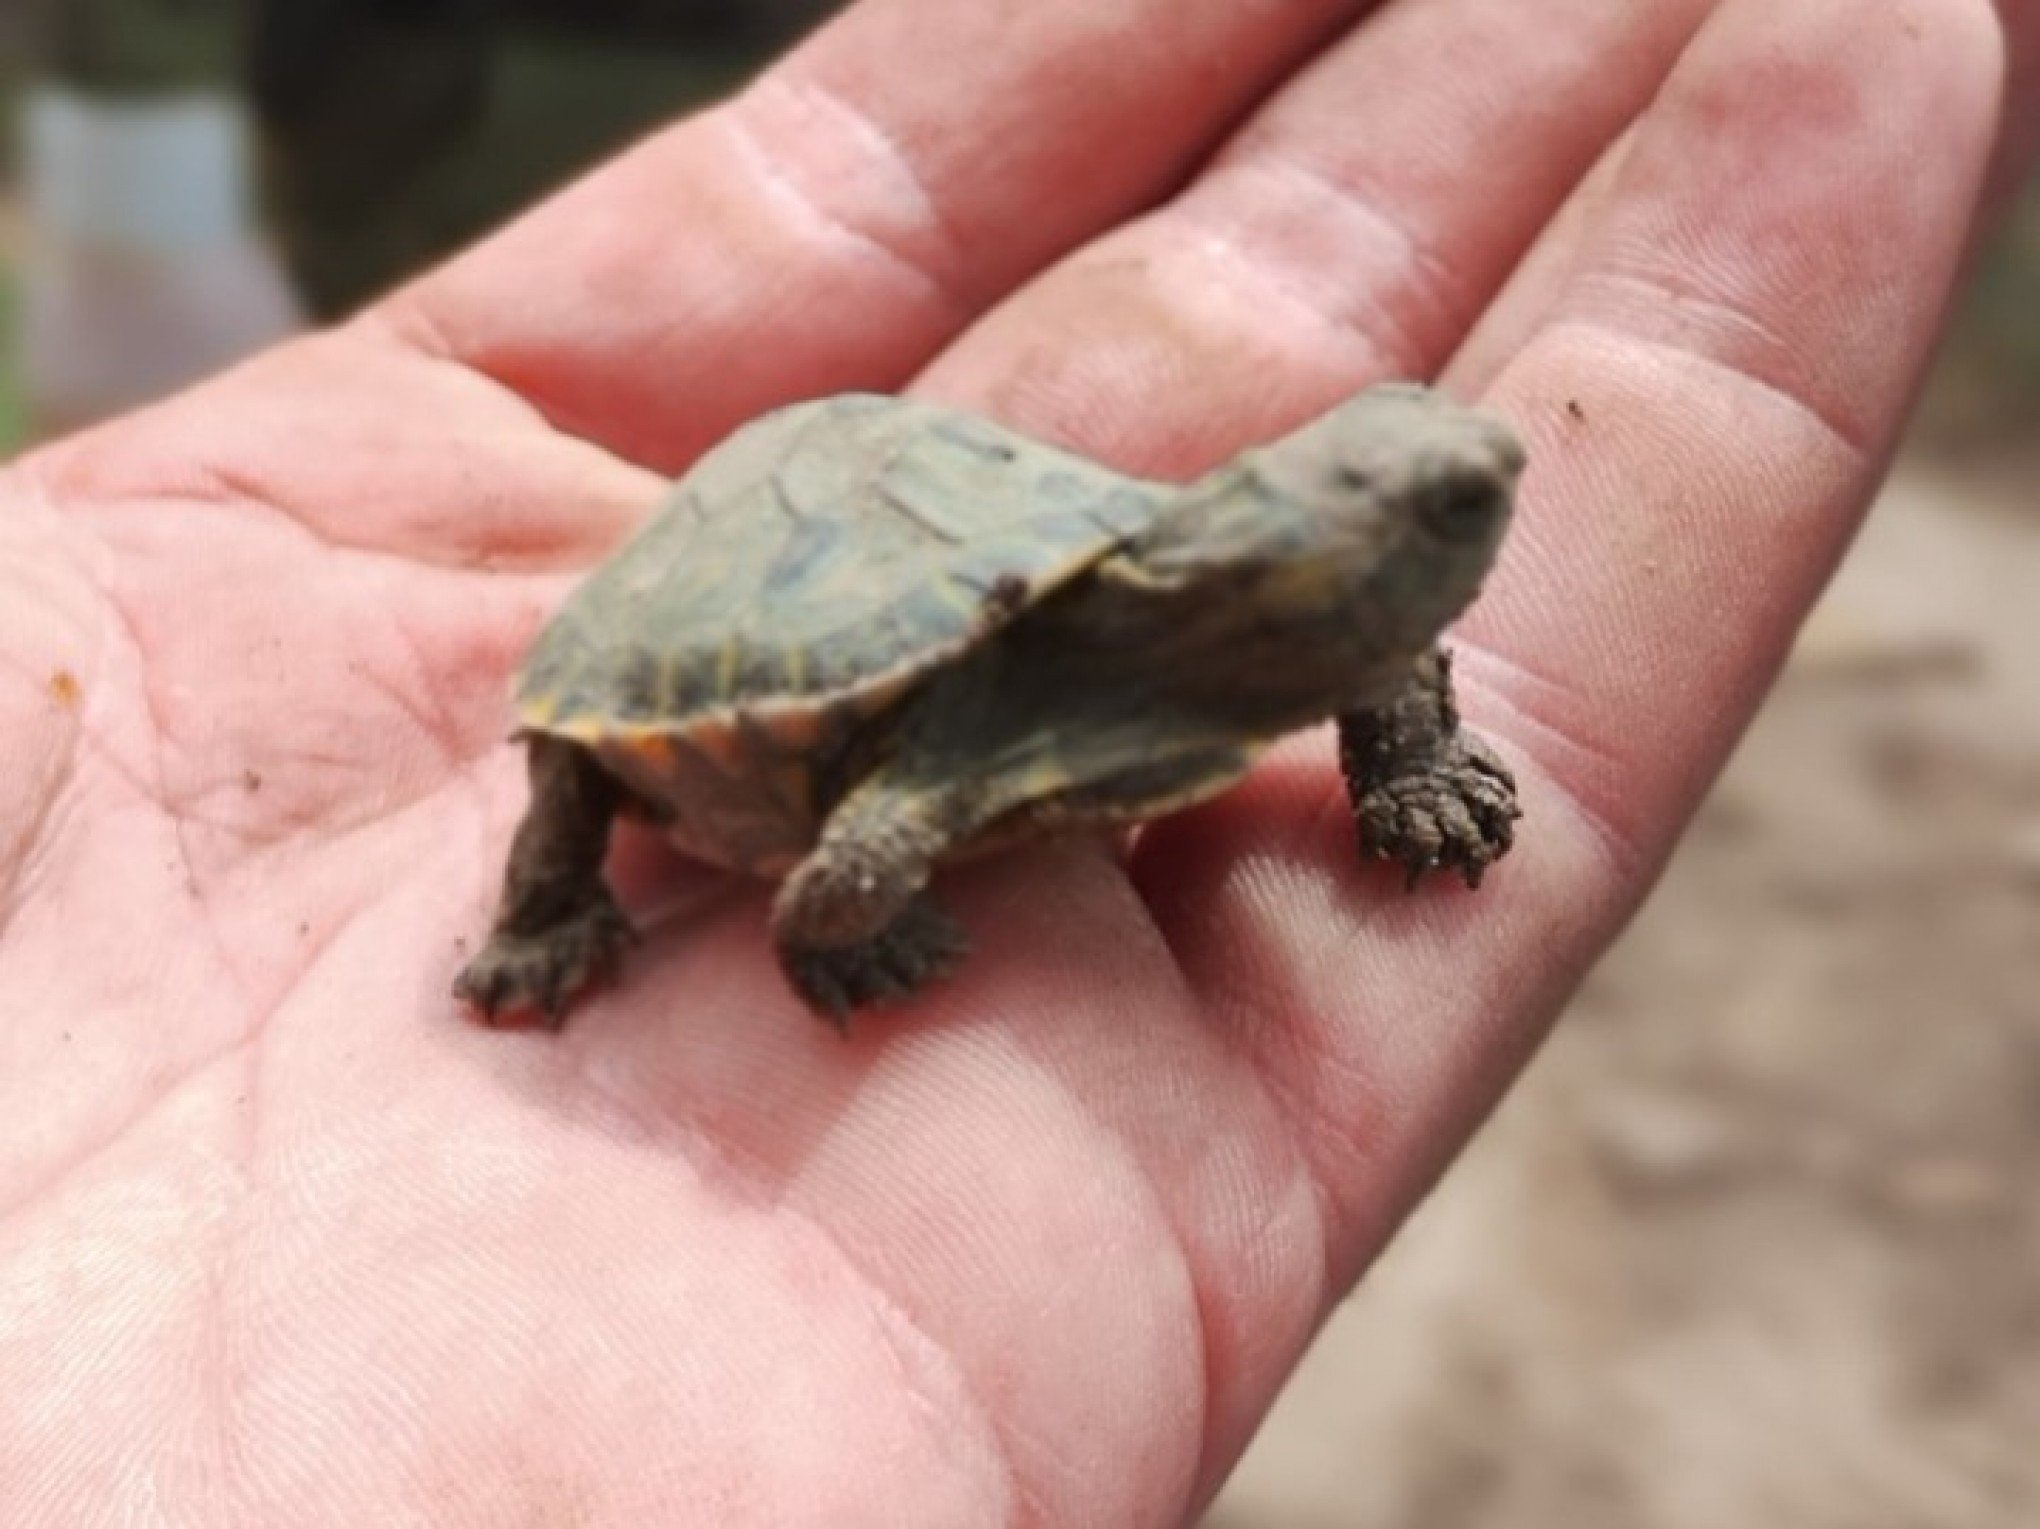 Dois mil filhotes de tartaruga sÃ£o encontrados em canteiros de terra em Rio Grande